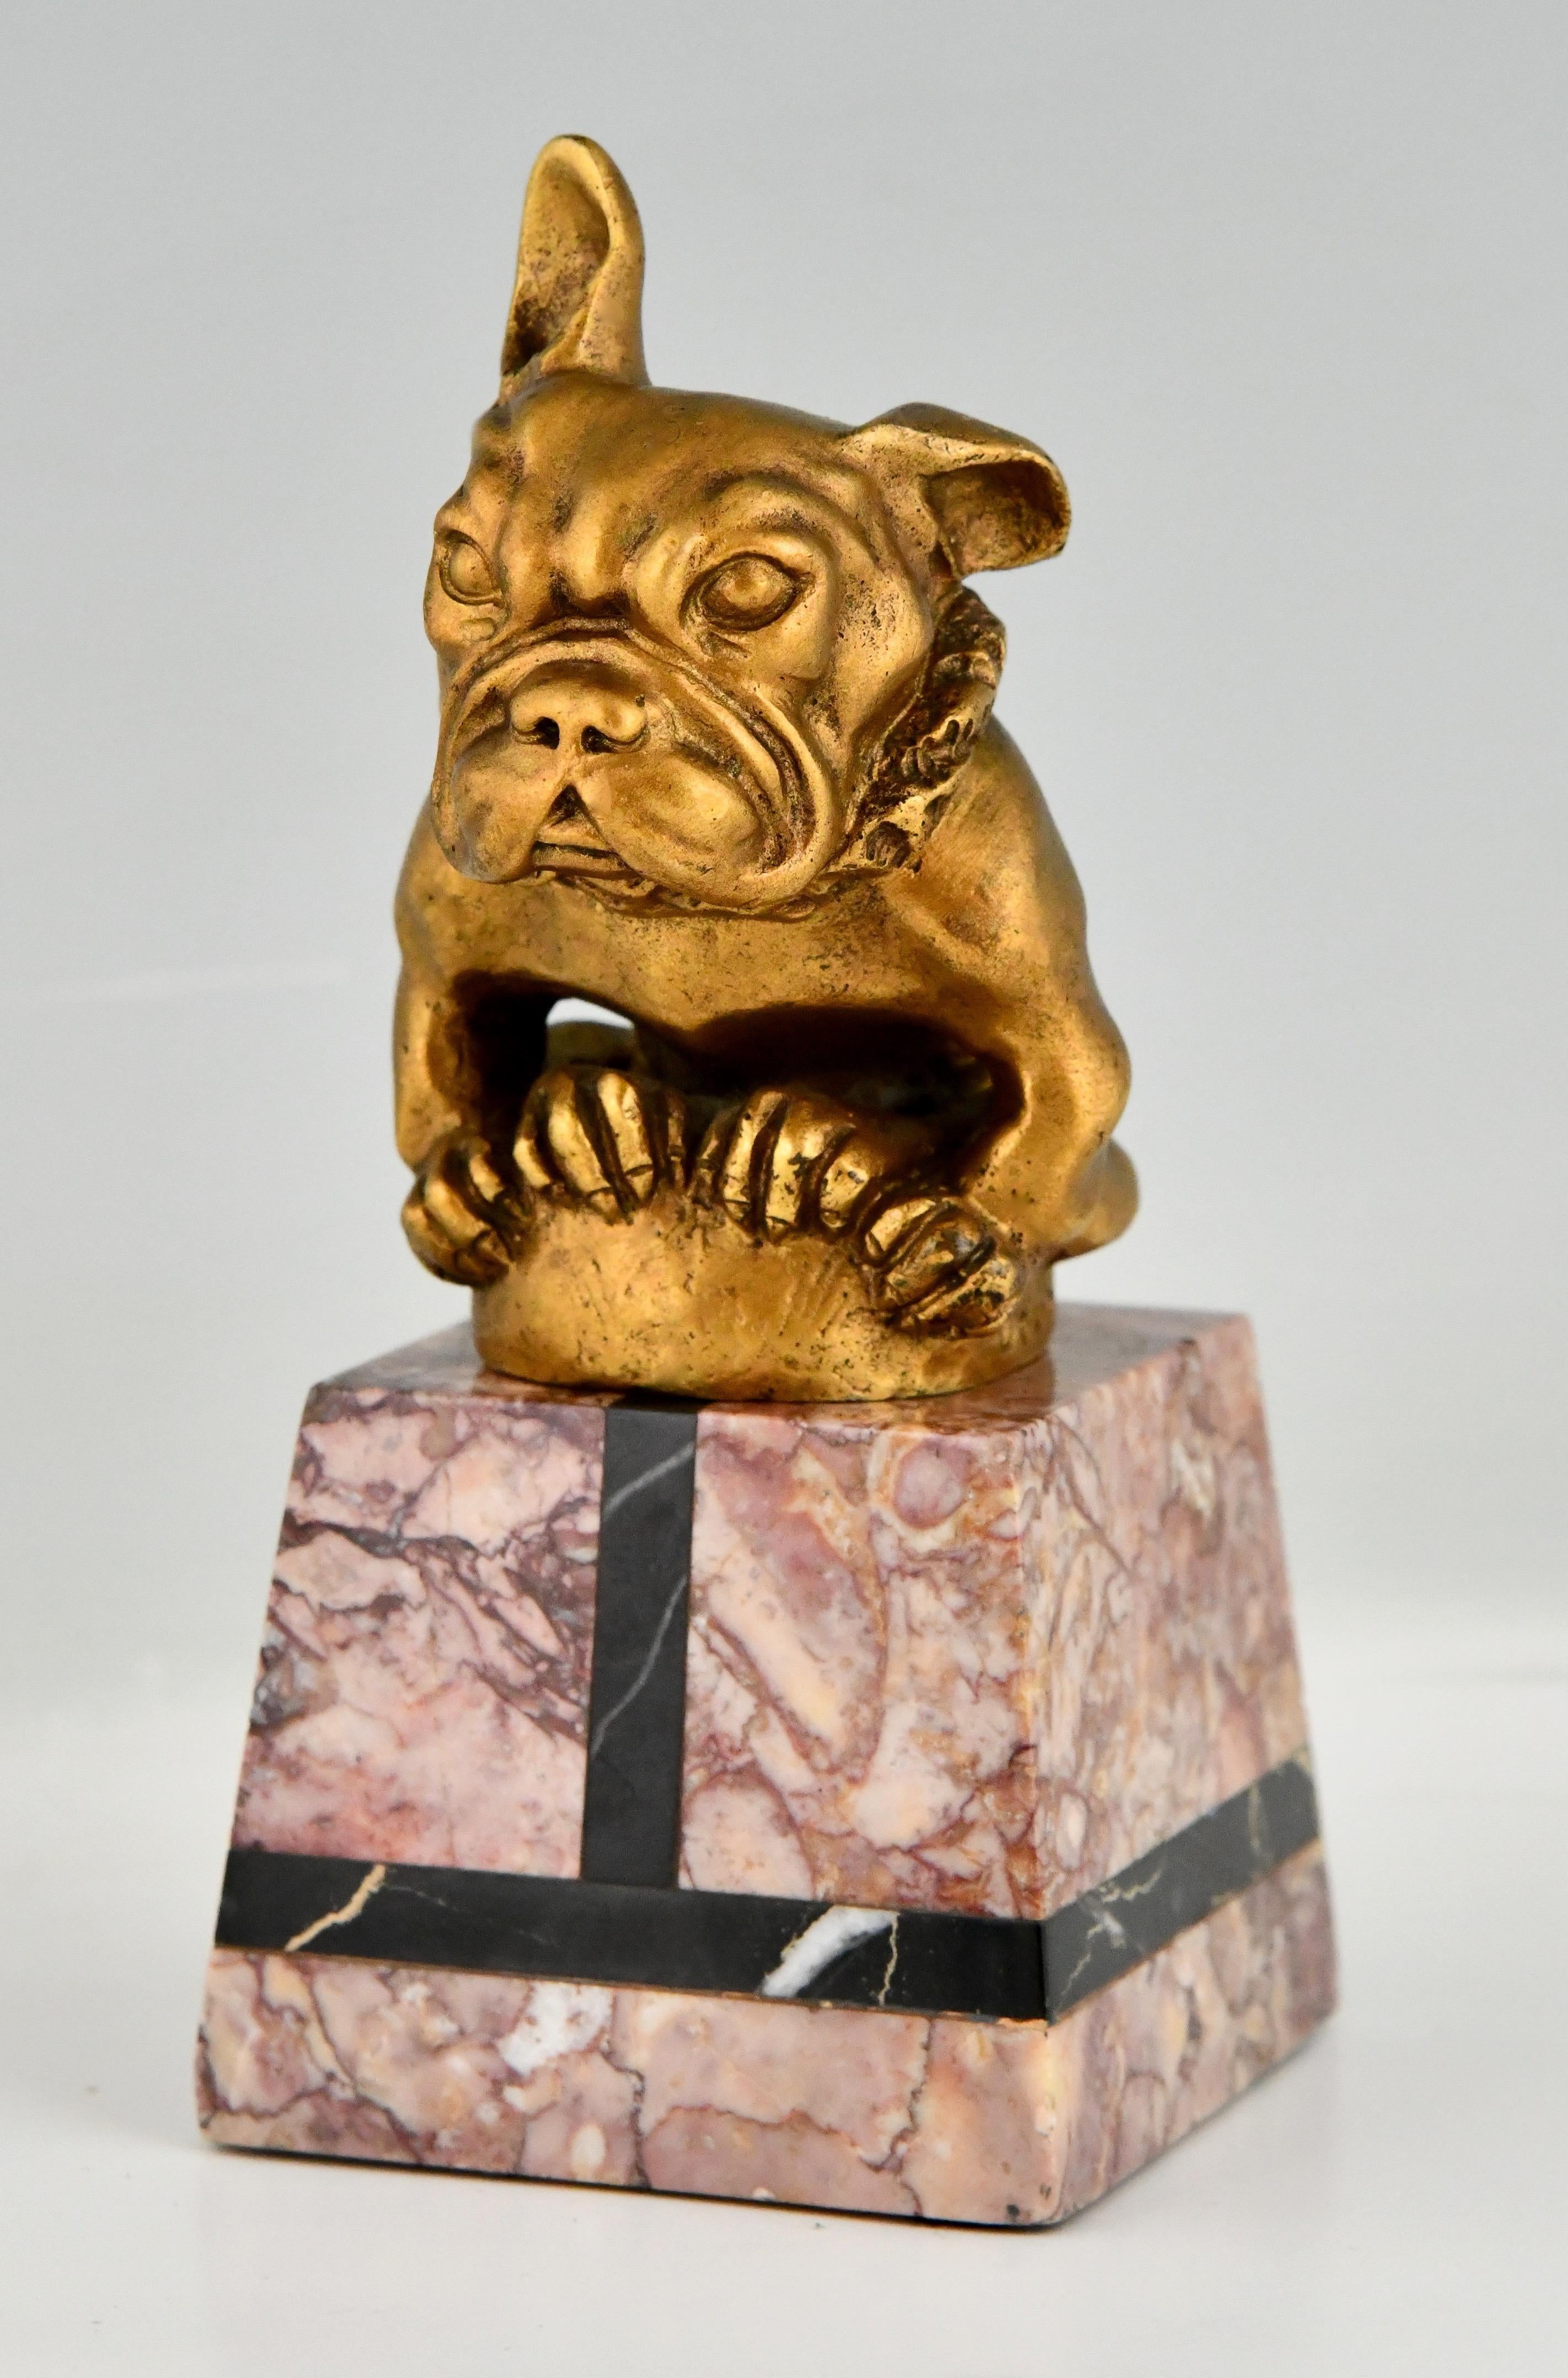 Art Deco Bronze Auto Maskottchen französische Bulldogge unterzeichnet von Gaston H. Bourcart.
Das Haubenornament ist aus vergoldeter Bronze und steht auf einem Marmorsockel. 
Frankreich 1925.
Dieses Maskottchen ist auf dem Schild Nr. 329